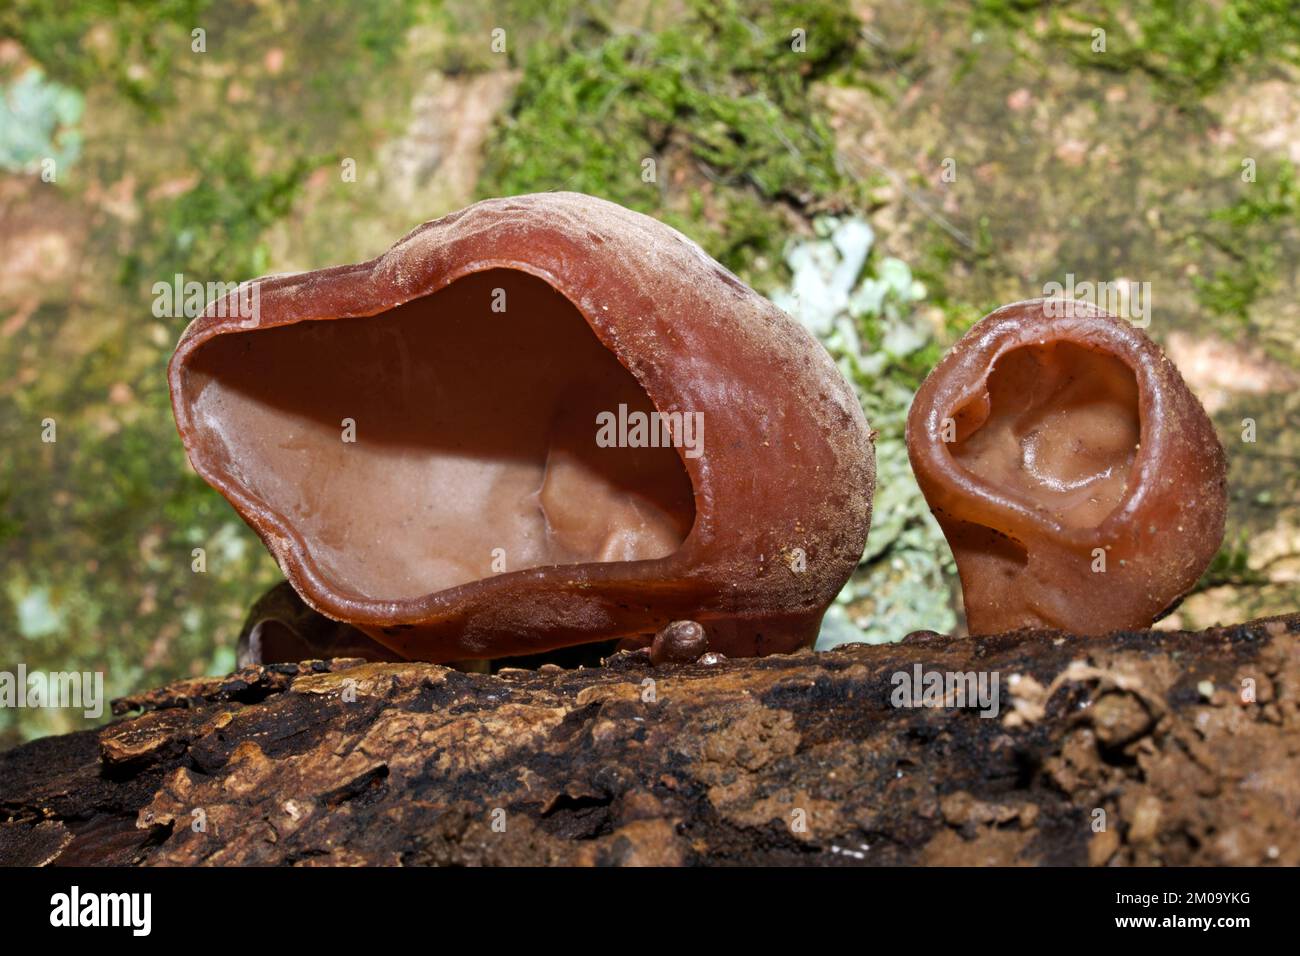 Il fungo Auricularia auricula-judae, che si sviluppa principalmente sull'anziano, è diffuso in tutta Europa. Foto Stock